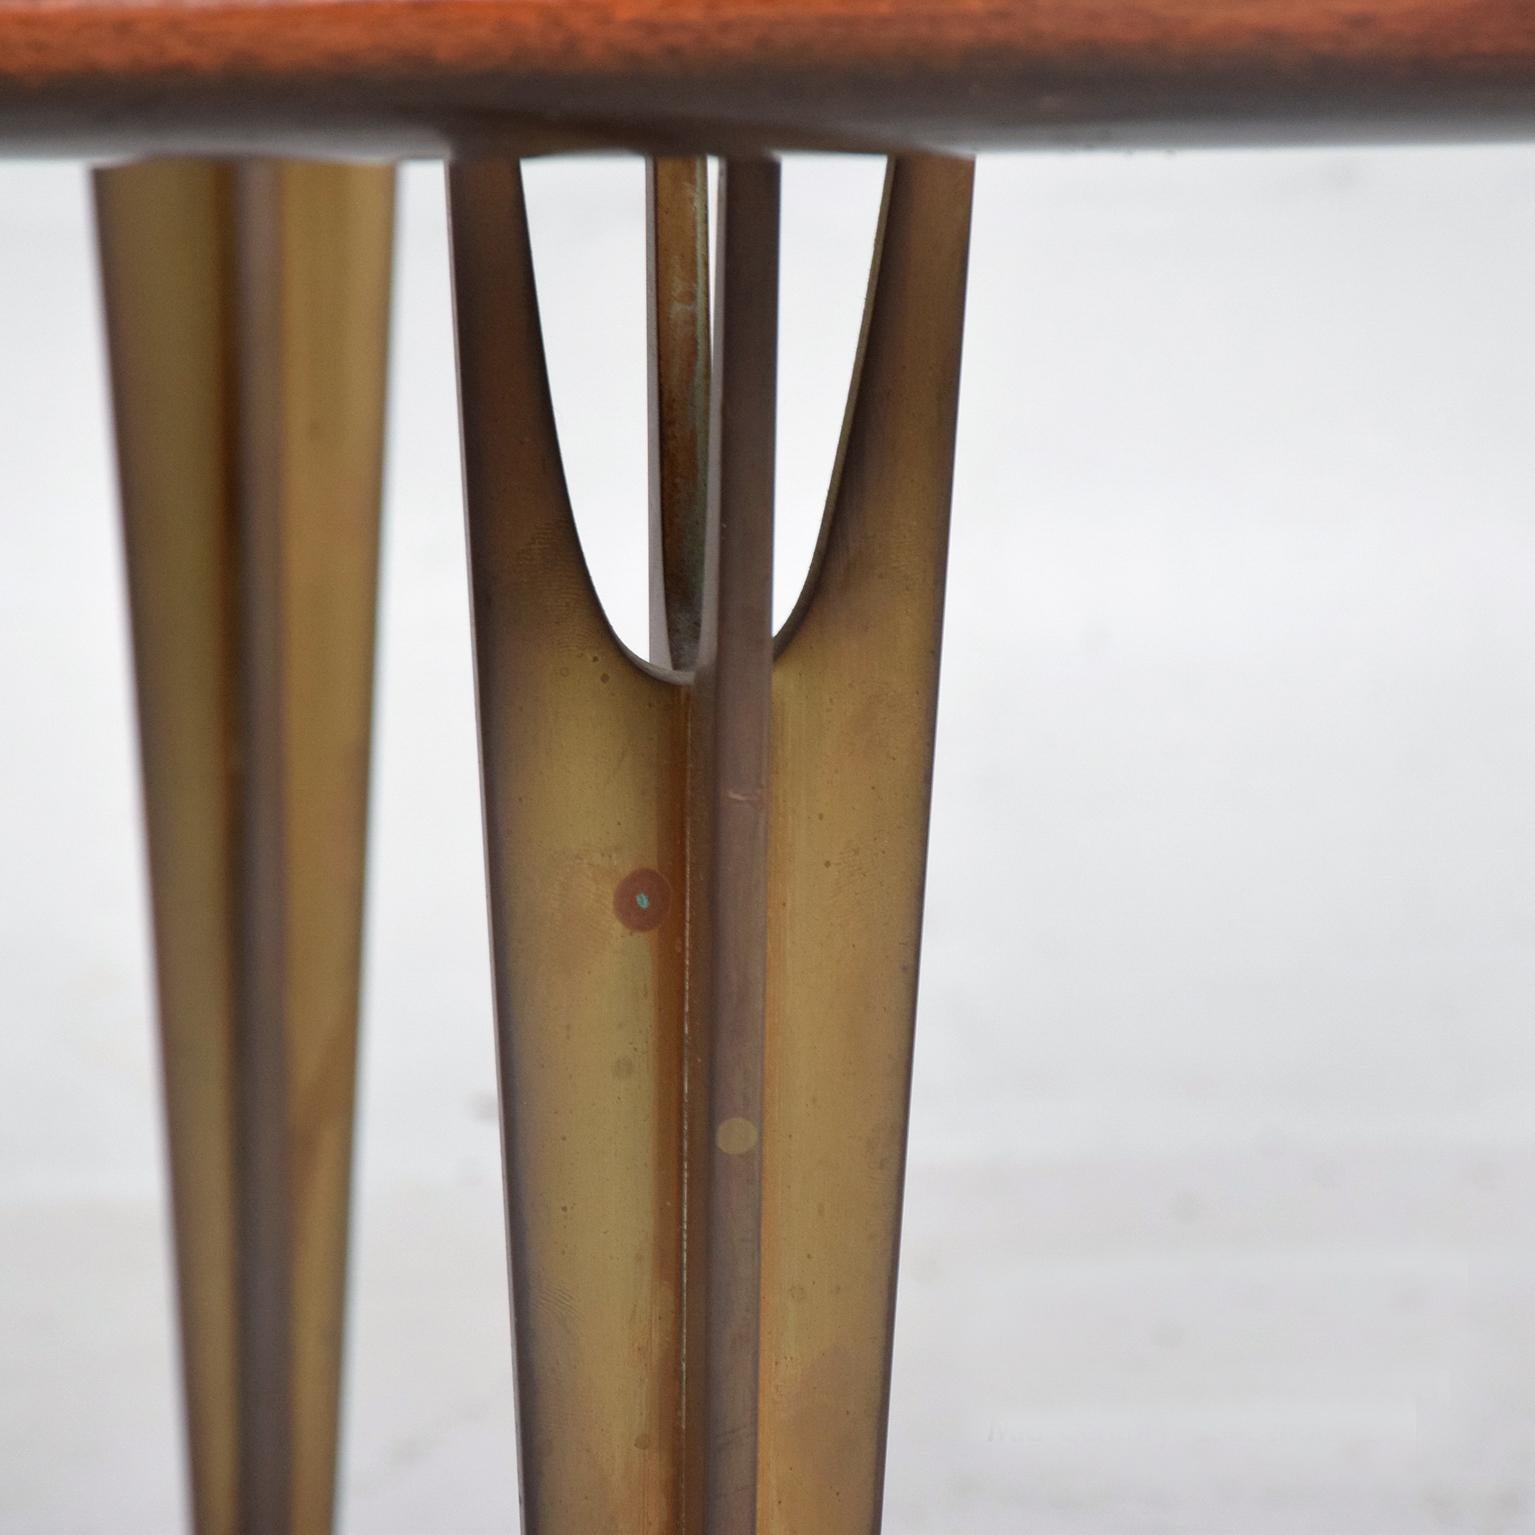 1950er Jahre Marmor Messing Mahagoni Holz Couchtisch Mexico City
Mexikanischer Modernismus in seiner schönsten Form.
Unmarkiert, Zuschreibung Eugenio Escudero.
Schwebende Marmorplatte in warmem Mahagoniholz. Die Beine sind aus massiver Bronze